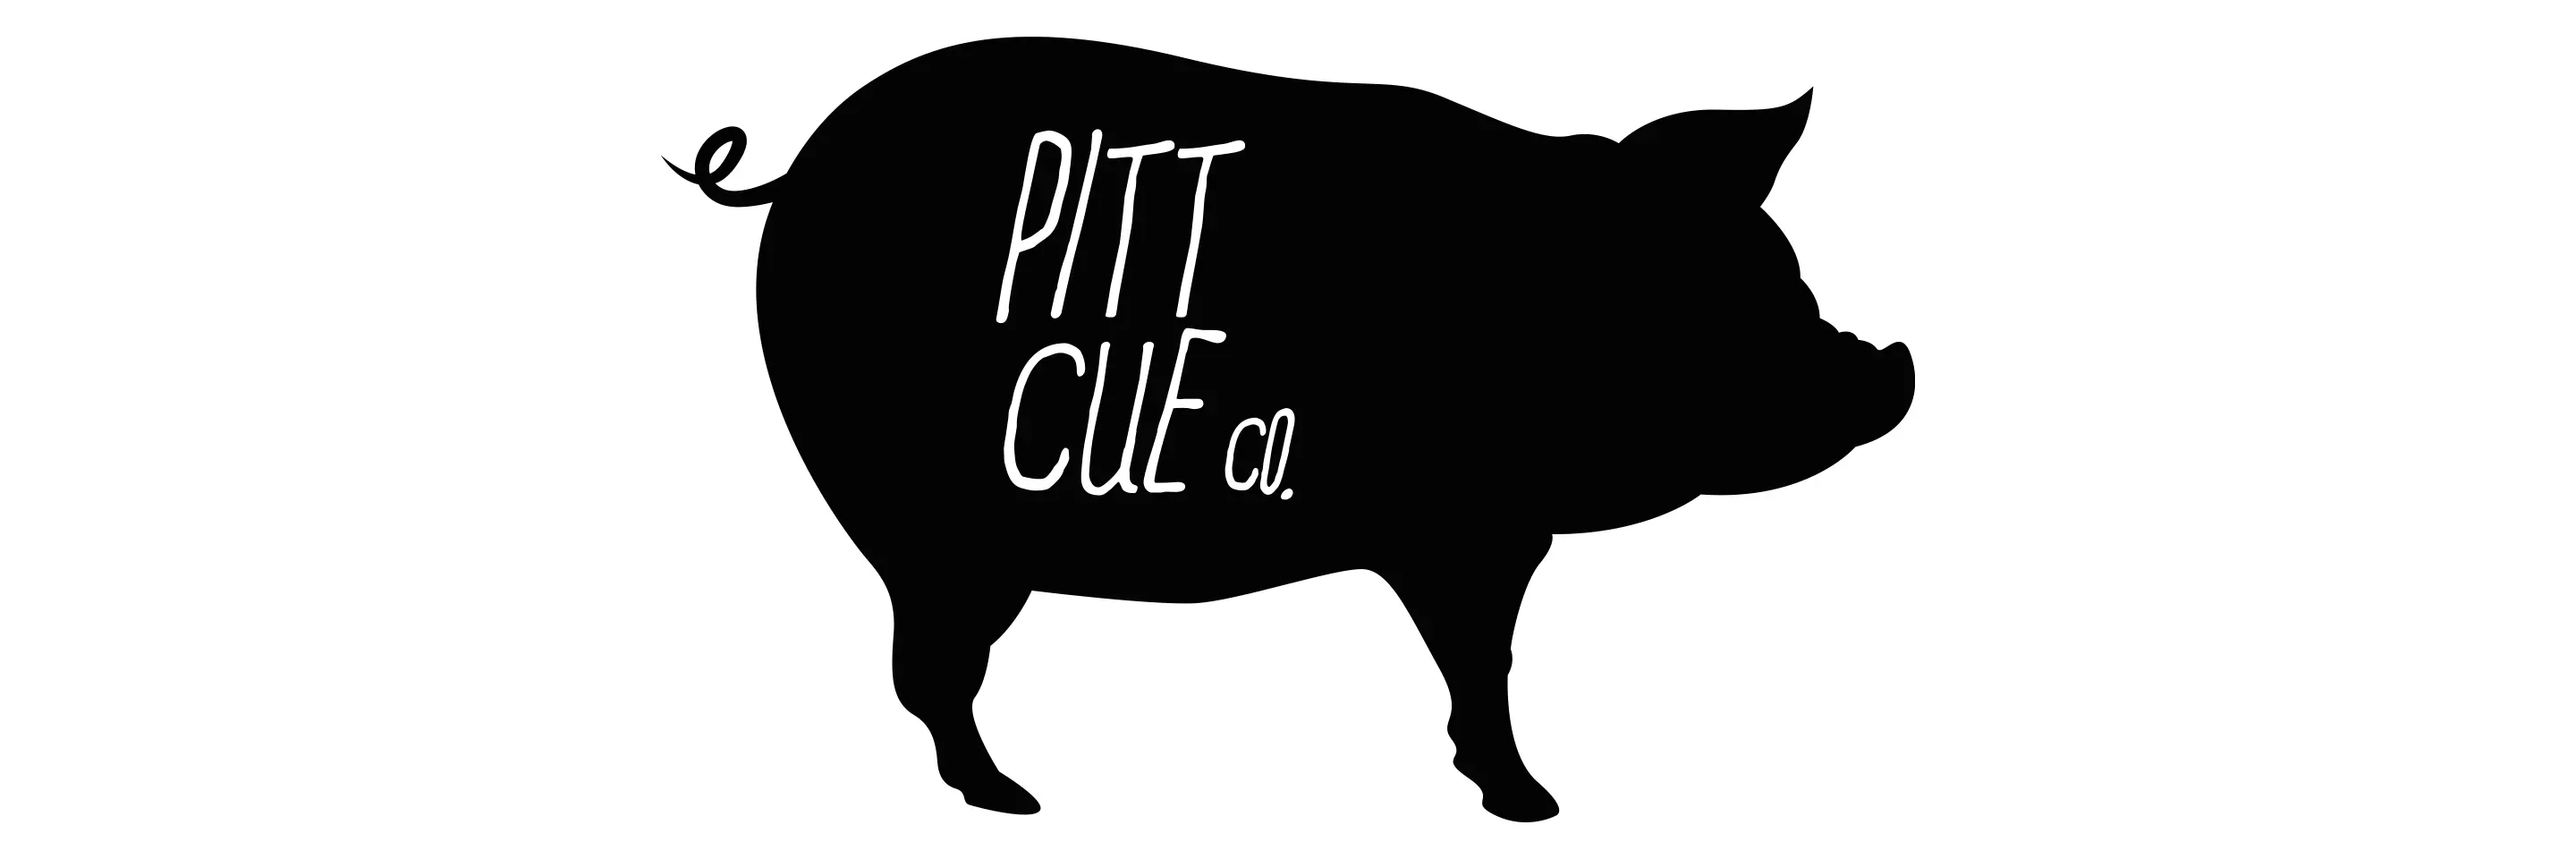 Pitt Cue Co. Main Logo